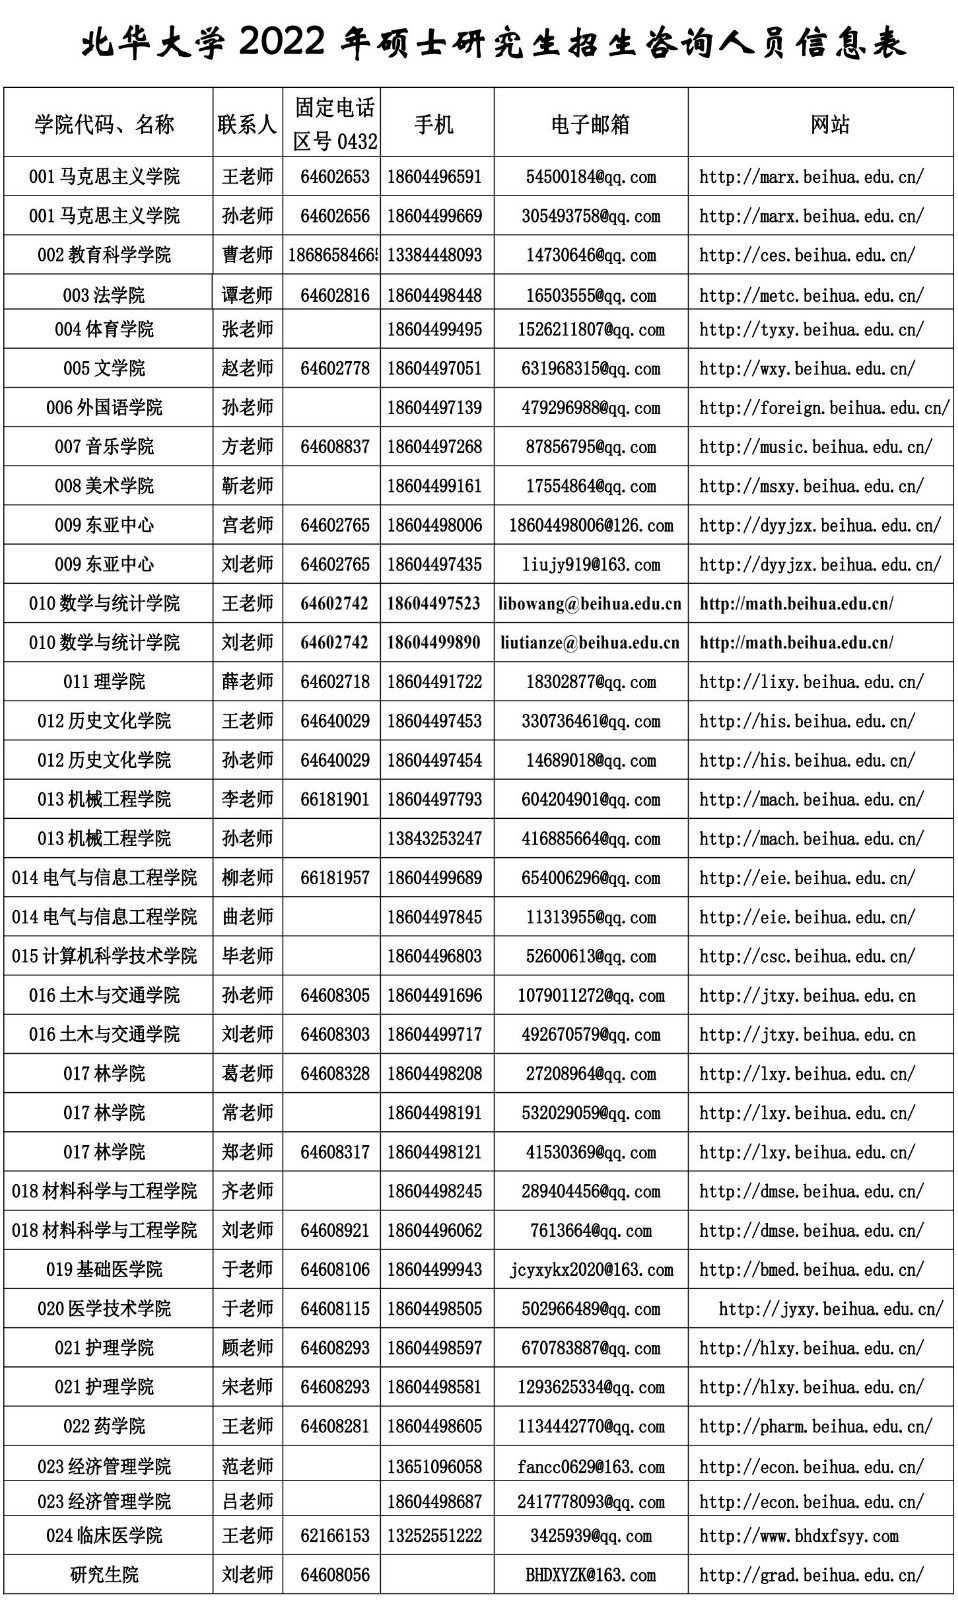 2022年北华大学硕士研究生招生咨询人员信息表